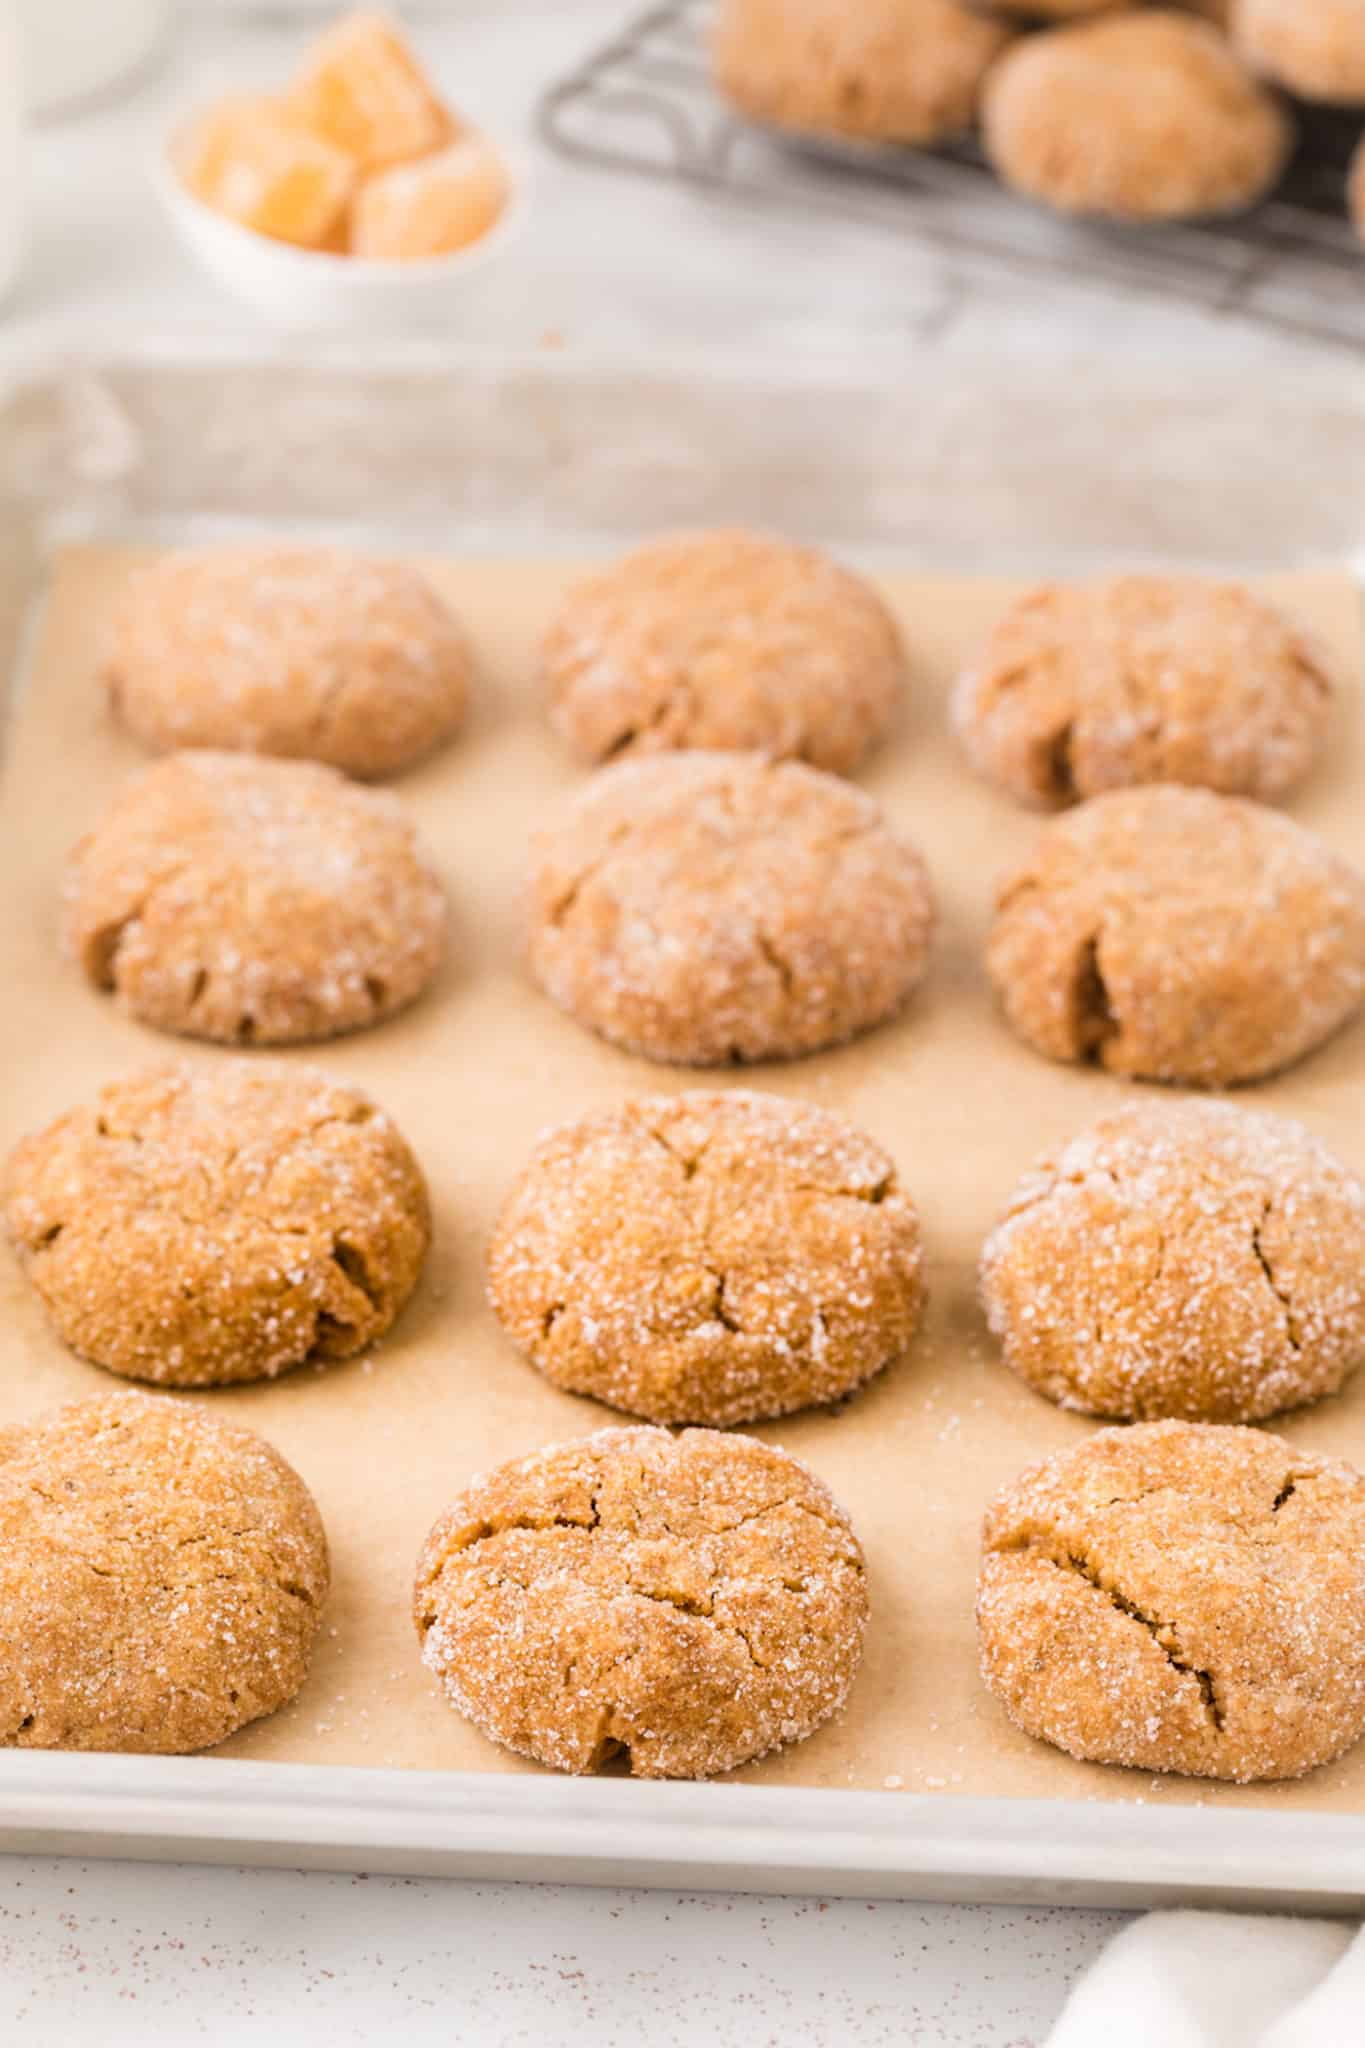 vegan gingersnap cookies cooling on the baking sheet.